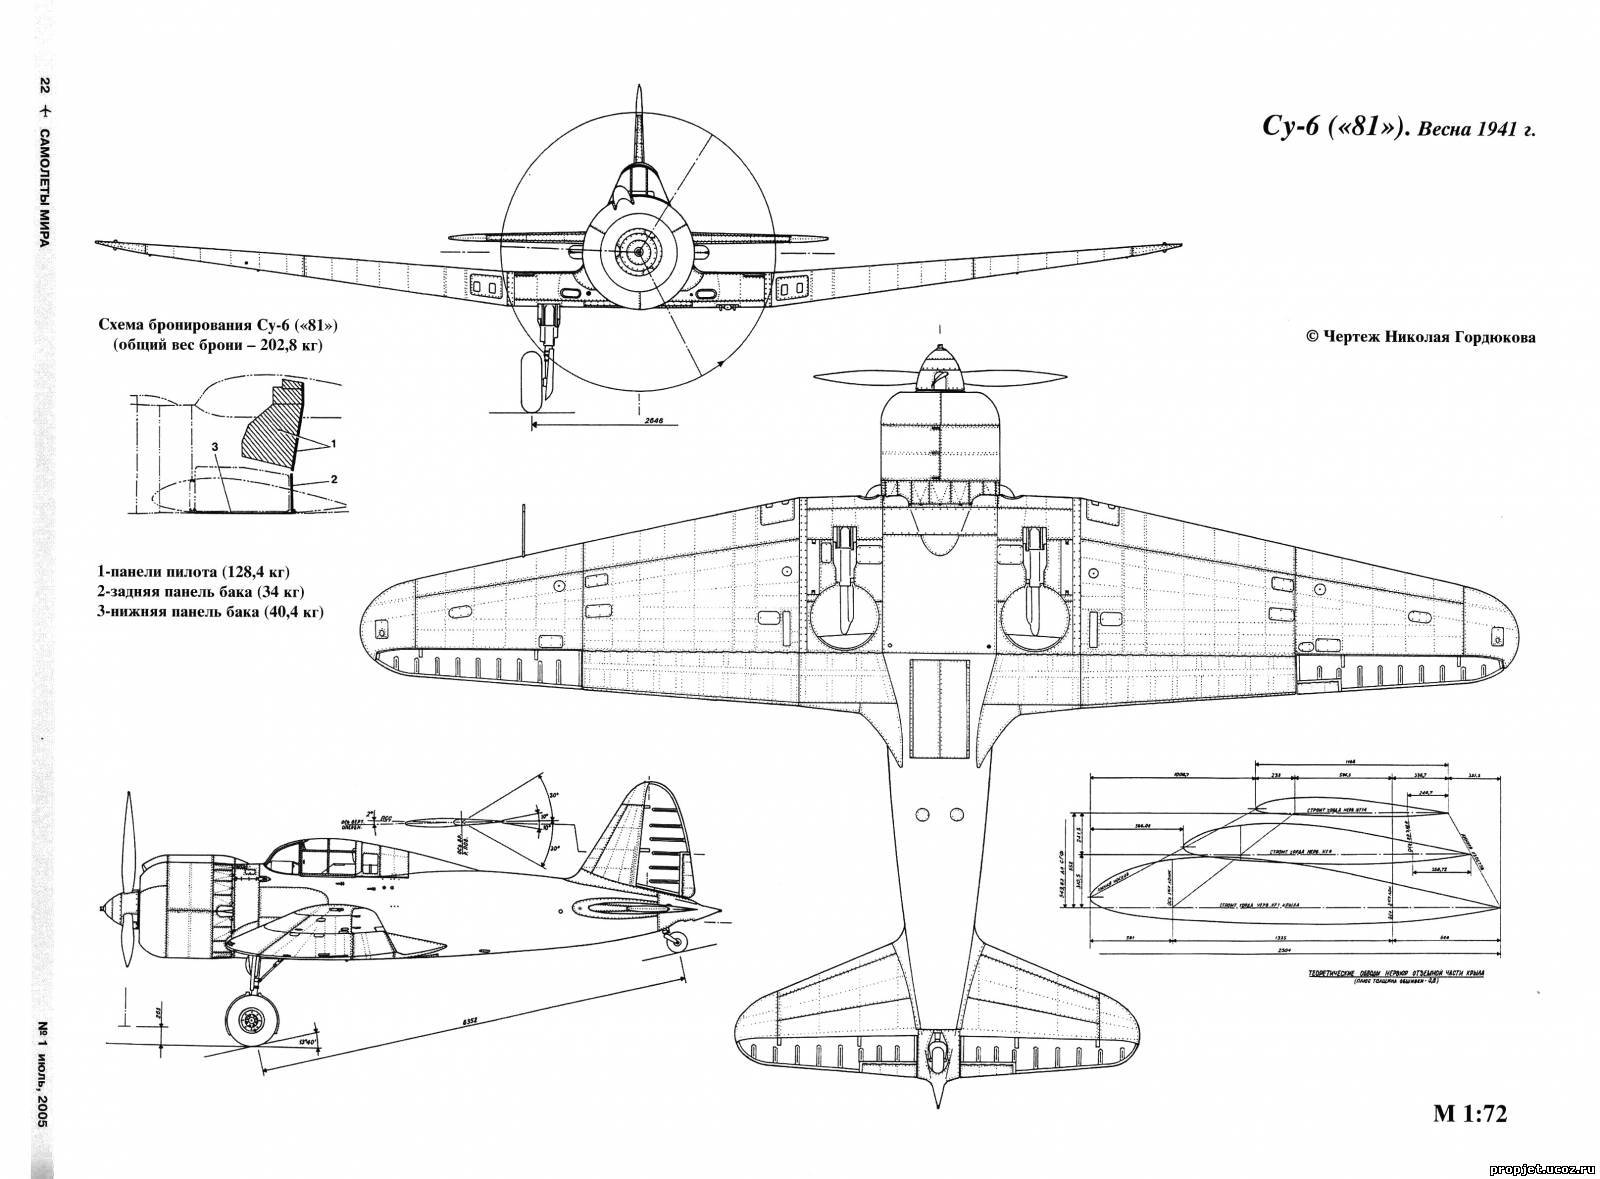 Ту-2 - советский двухмоторный высокоскоростной бомбардировщик
ту-2 - советский двухмоторный высокоскоростной бомбардировщик